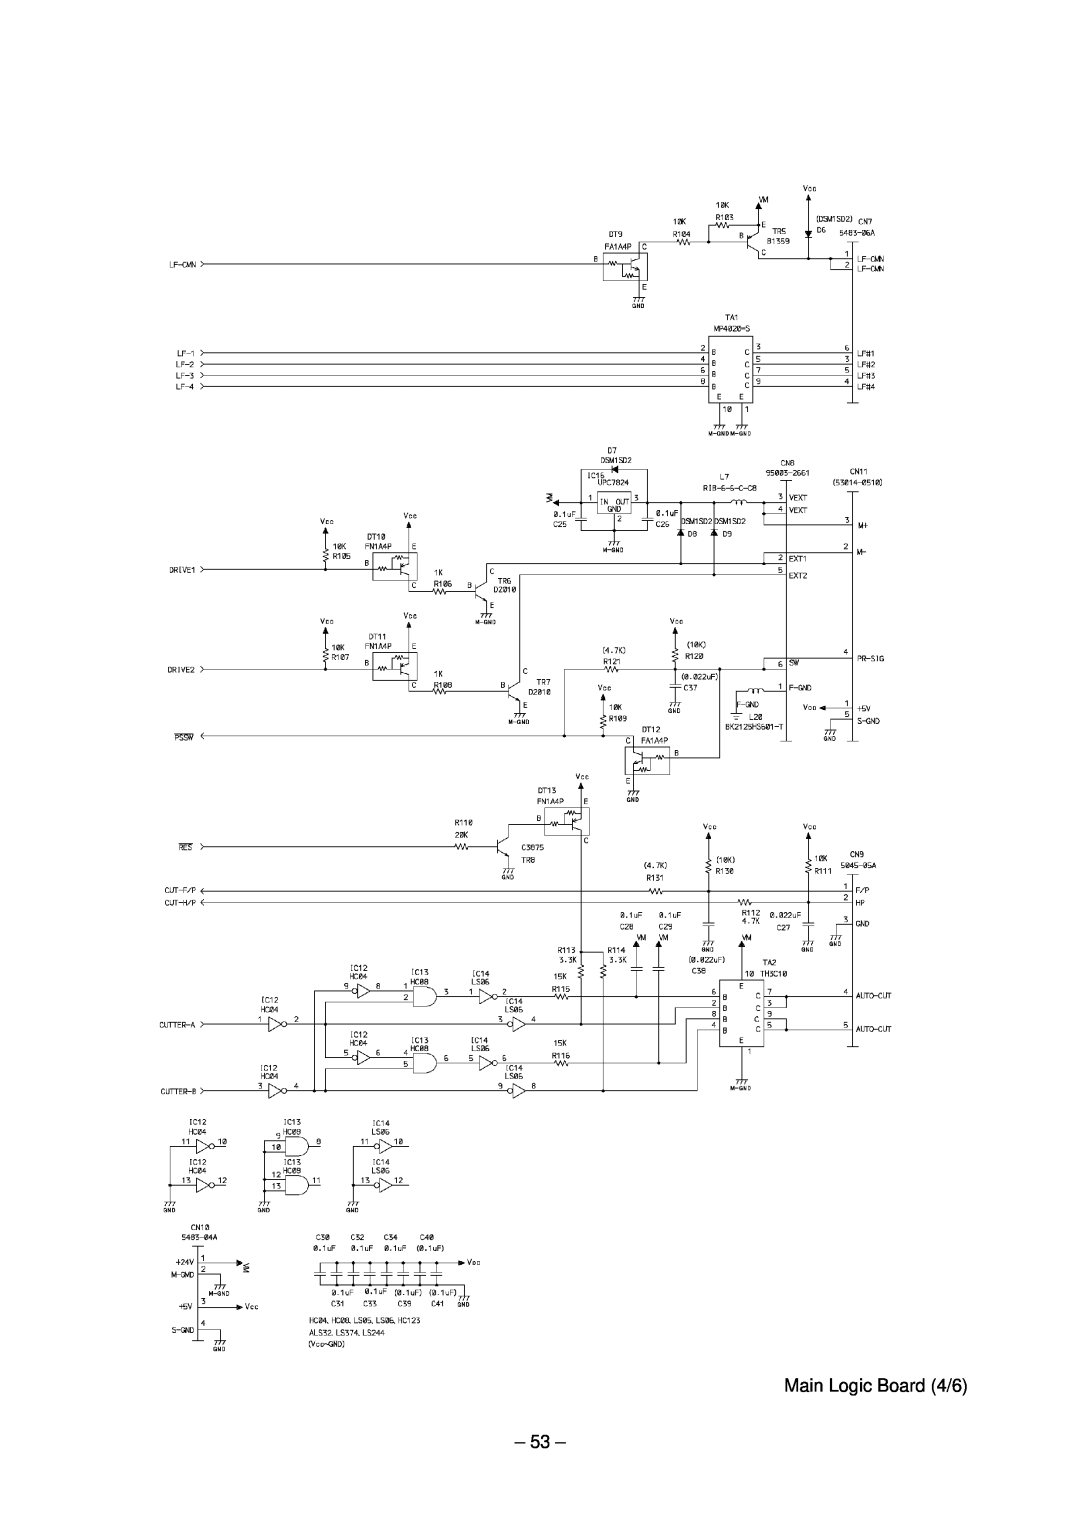 Star Micronics TSP200 technical manual Main Logic Board 4/6 